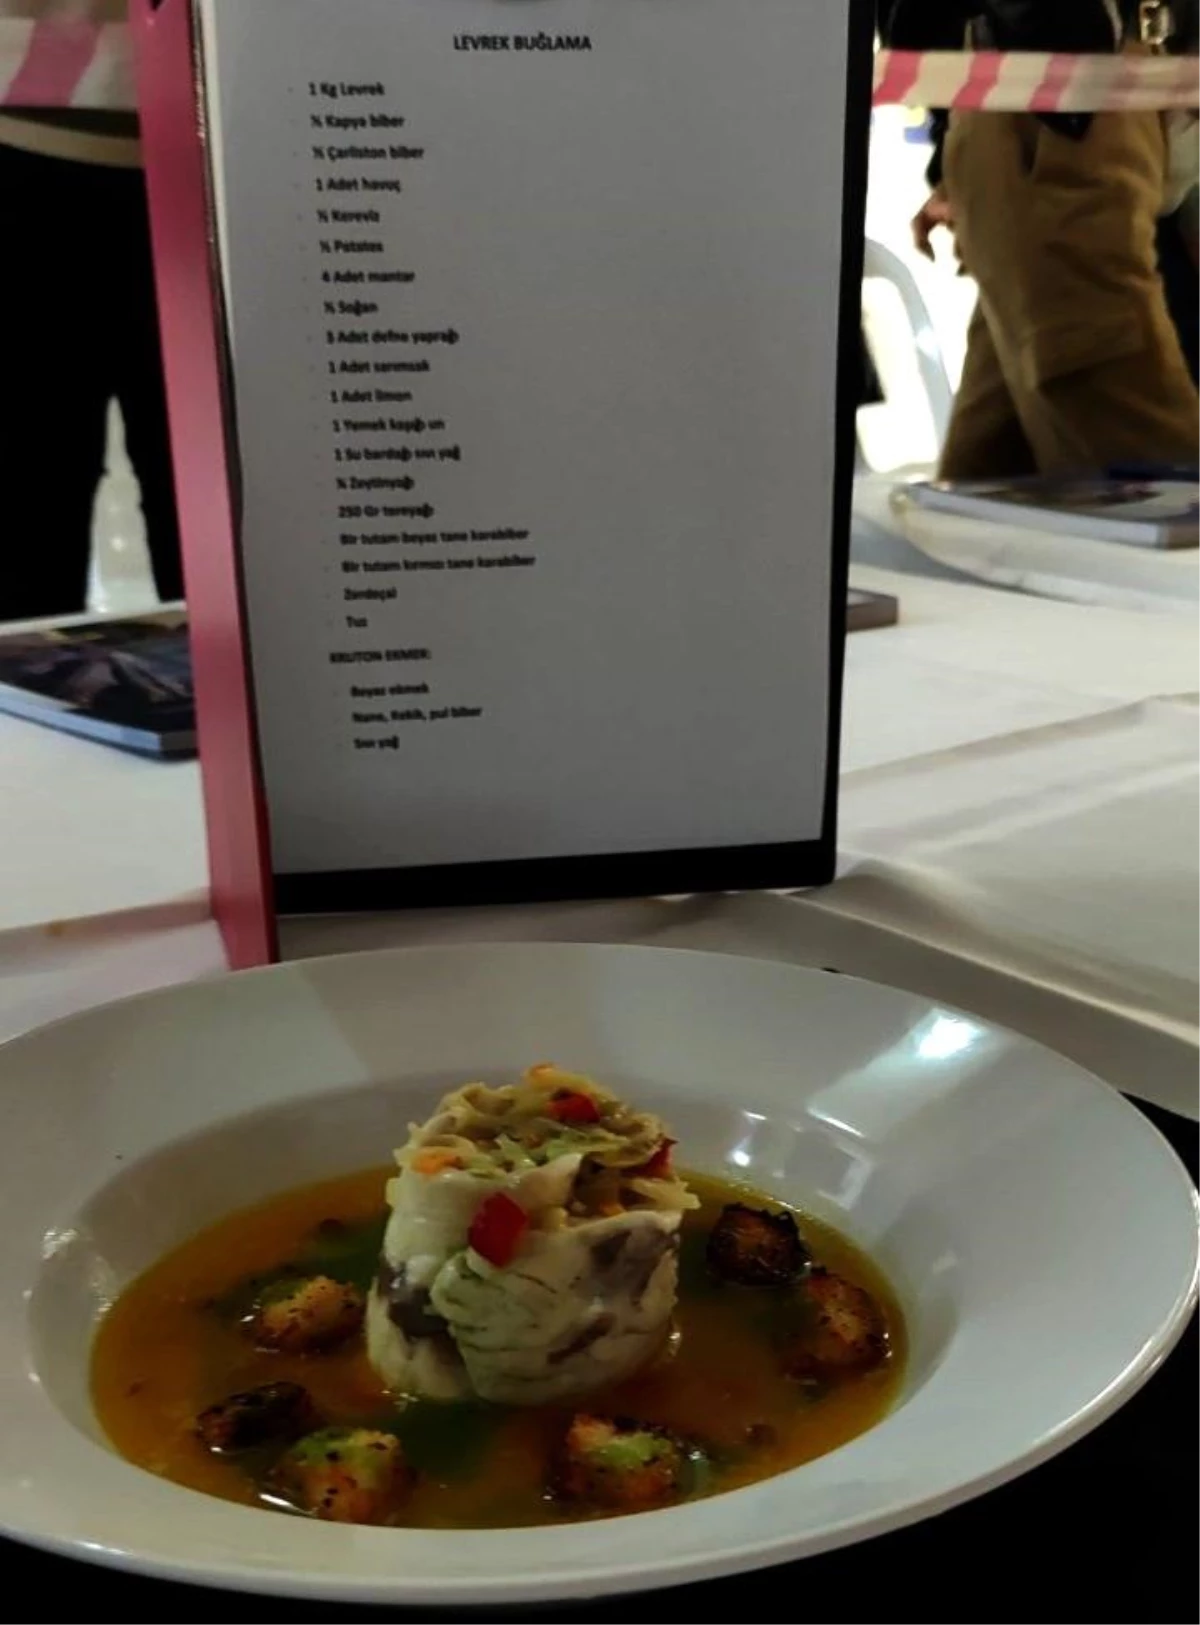 Düzce Üniversitesi Öğrencisi Modern Türk Mutfağı Yarışmasında Altın Madalya Kazandı